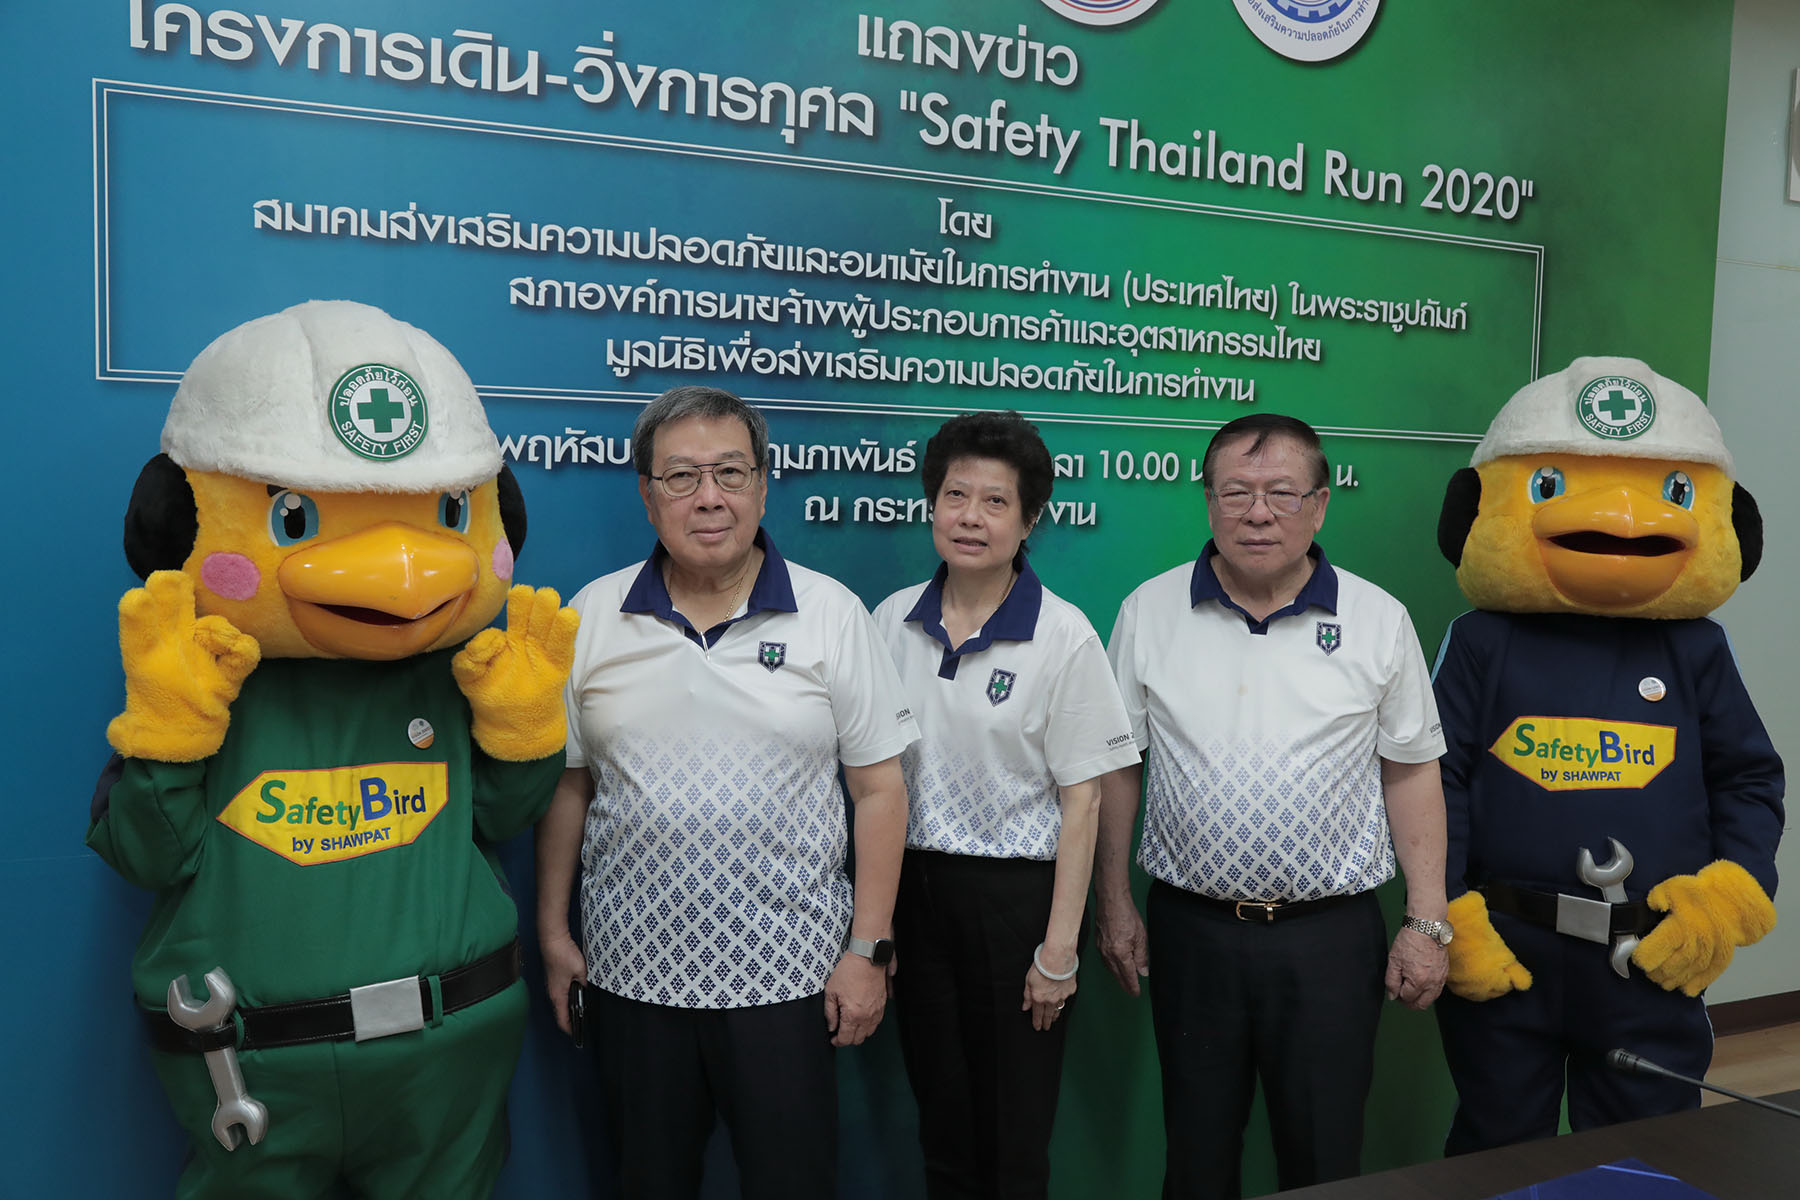 3 หน่วยงานหลักด้านความปลอดภัยในการทำงานแห่งชาติ ผนึกกำลังจัดโครงการเดิน-วิ่งการกุศล Safety Thailand Run 2020 ครั้งที่ 1